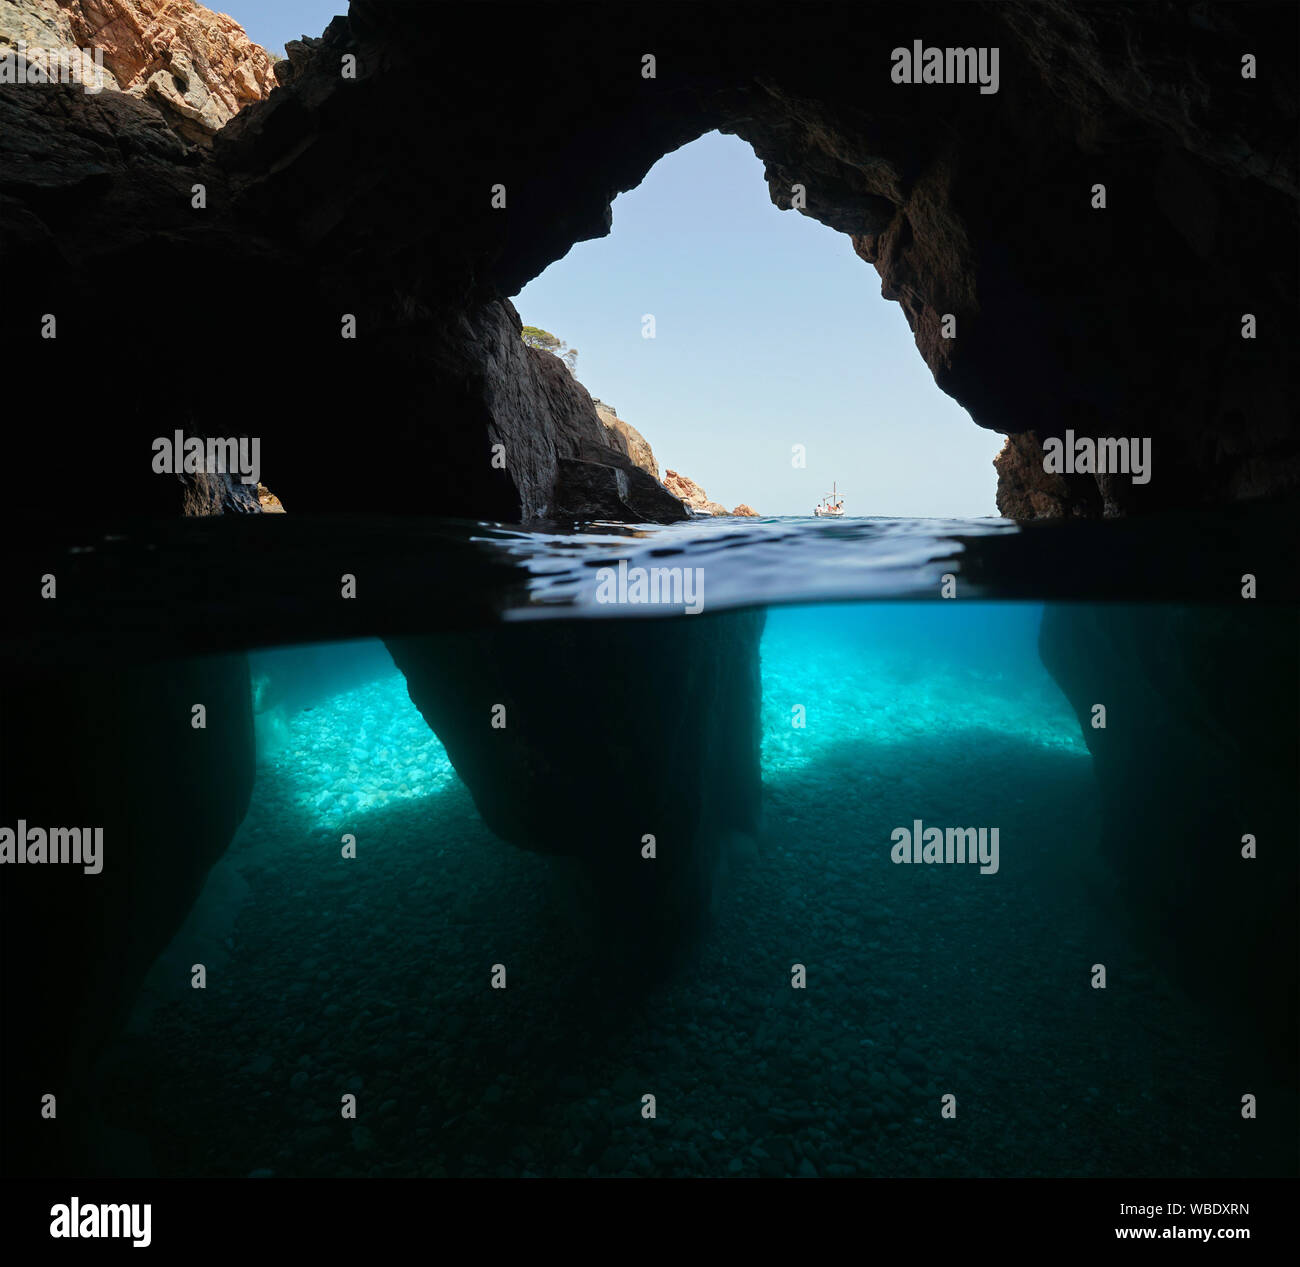 Über und unter Wasser in einer Höhle mit mehreren Öffnungen an der Küste, Spanien, Mittelmeer, Costa Brava, Katalonien, Calella de Palafrugell Stockfoto